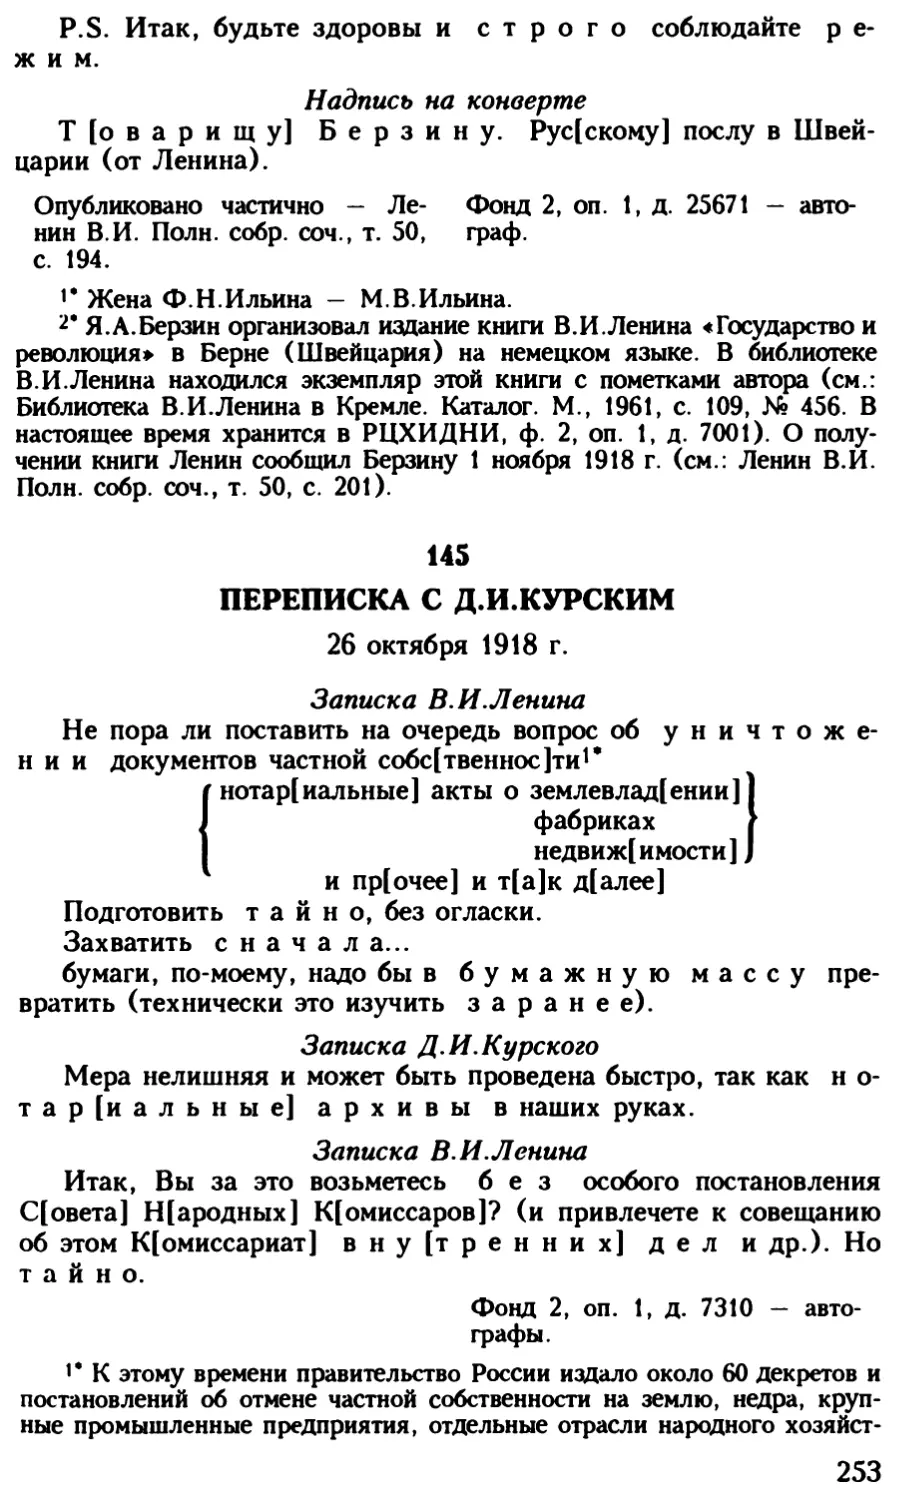 145. Переписка с Д.И.Курским. 26 октября 1918 г